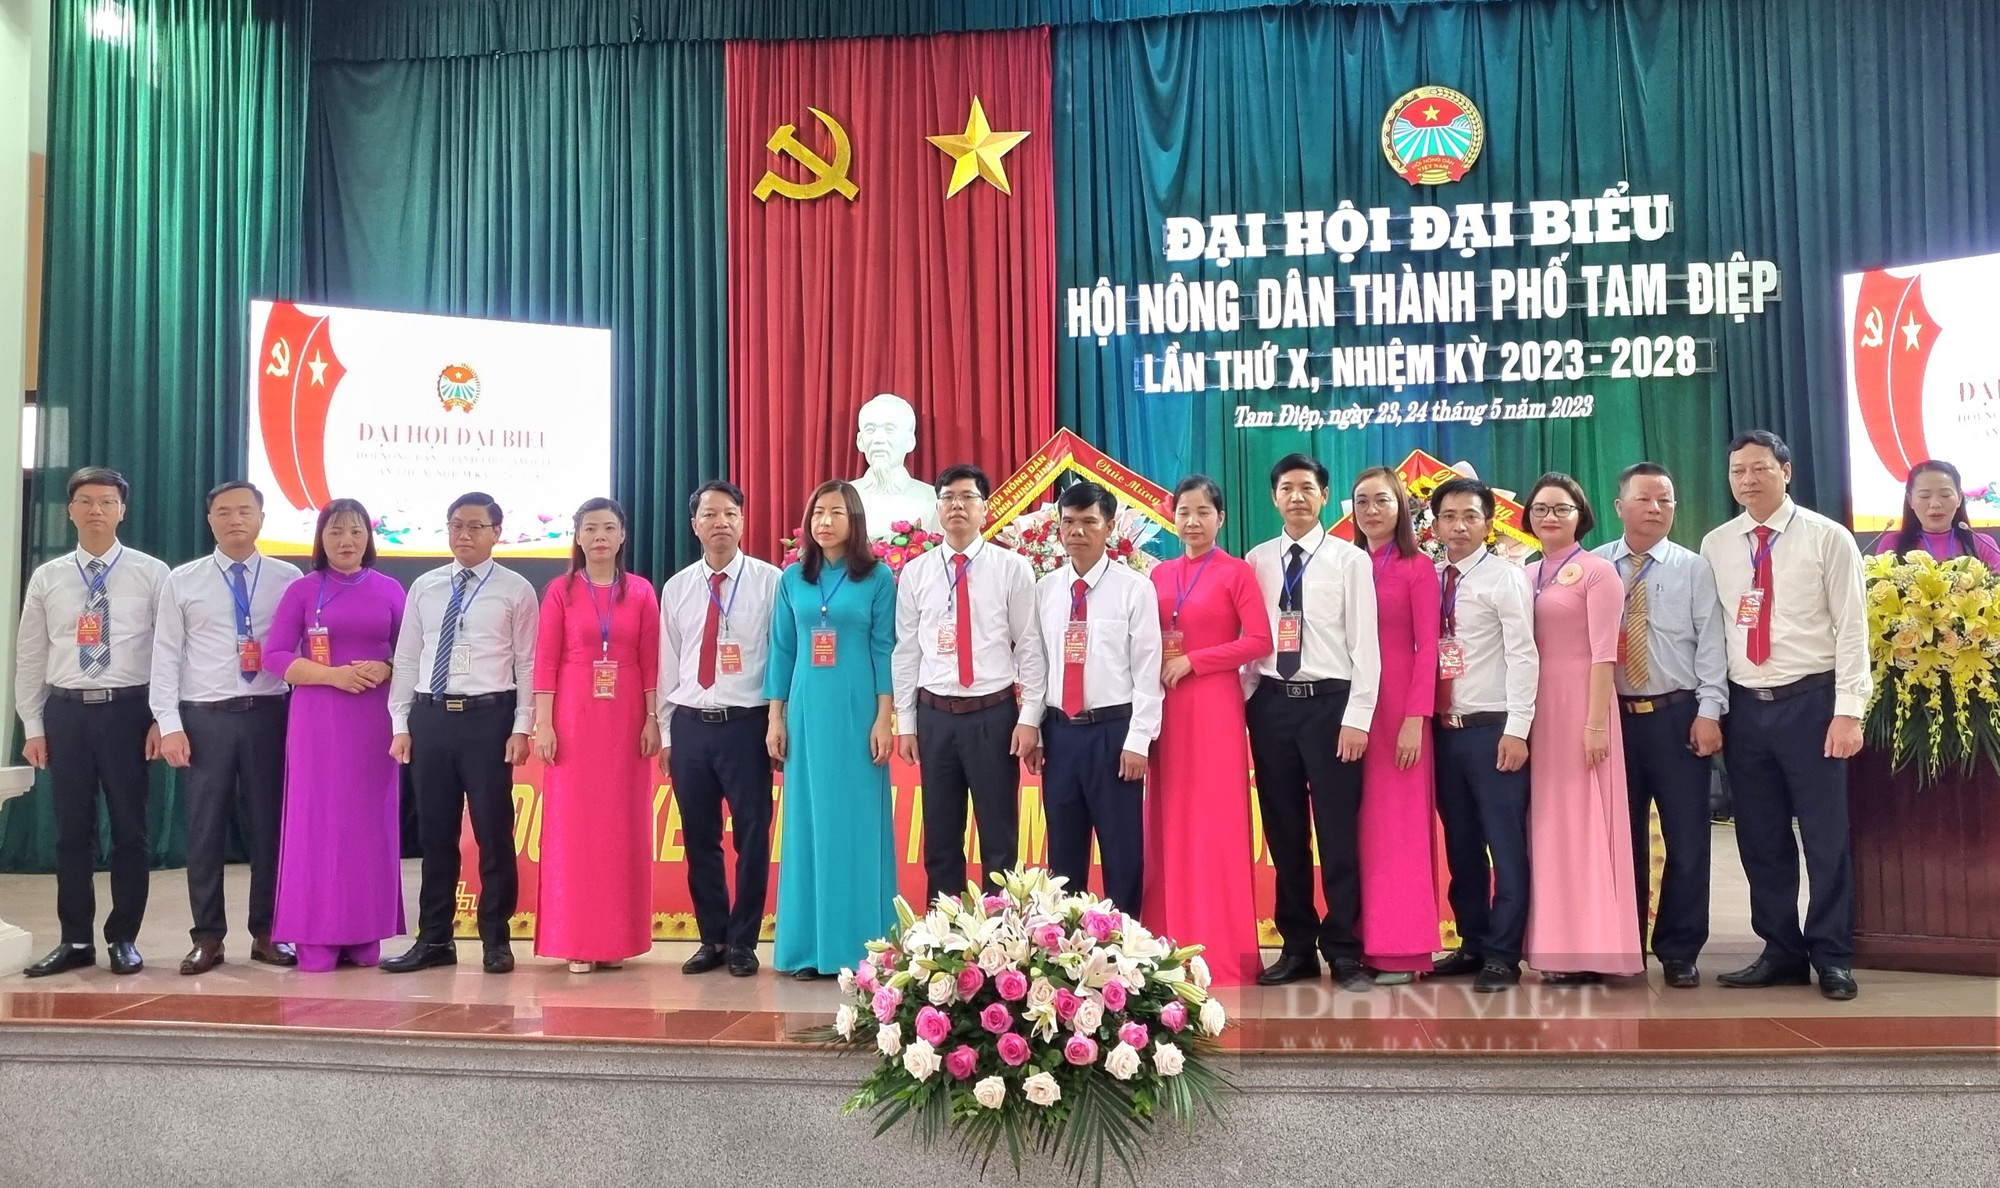 Ninh Bình: Bà Tạ Thị Thế tái đắc cử Chủ tịch Hội Nông dân thành phố Tam Điệp - Ảnh 5.